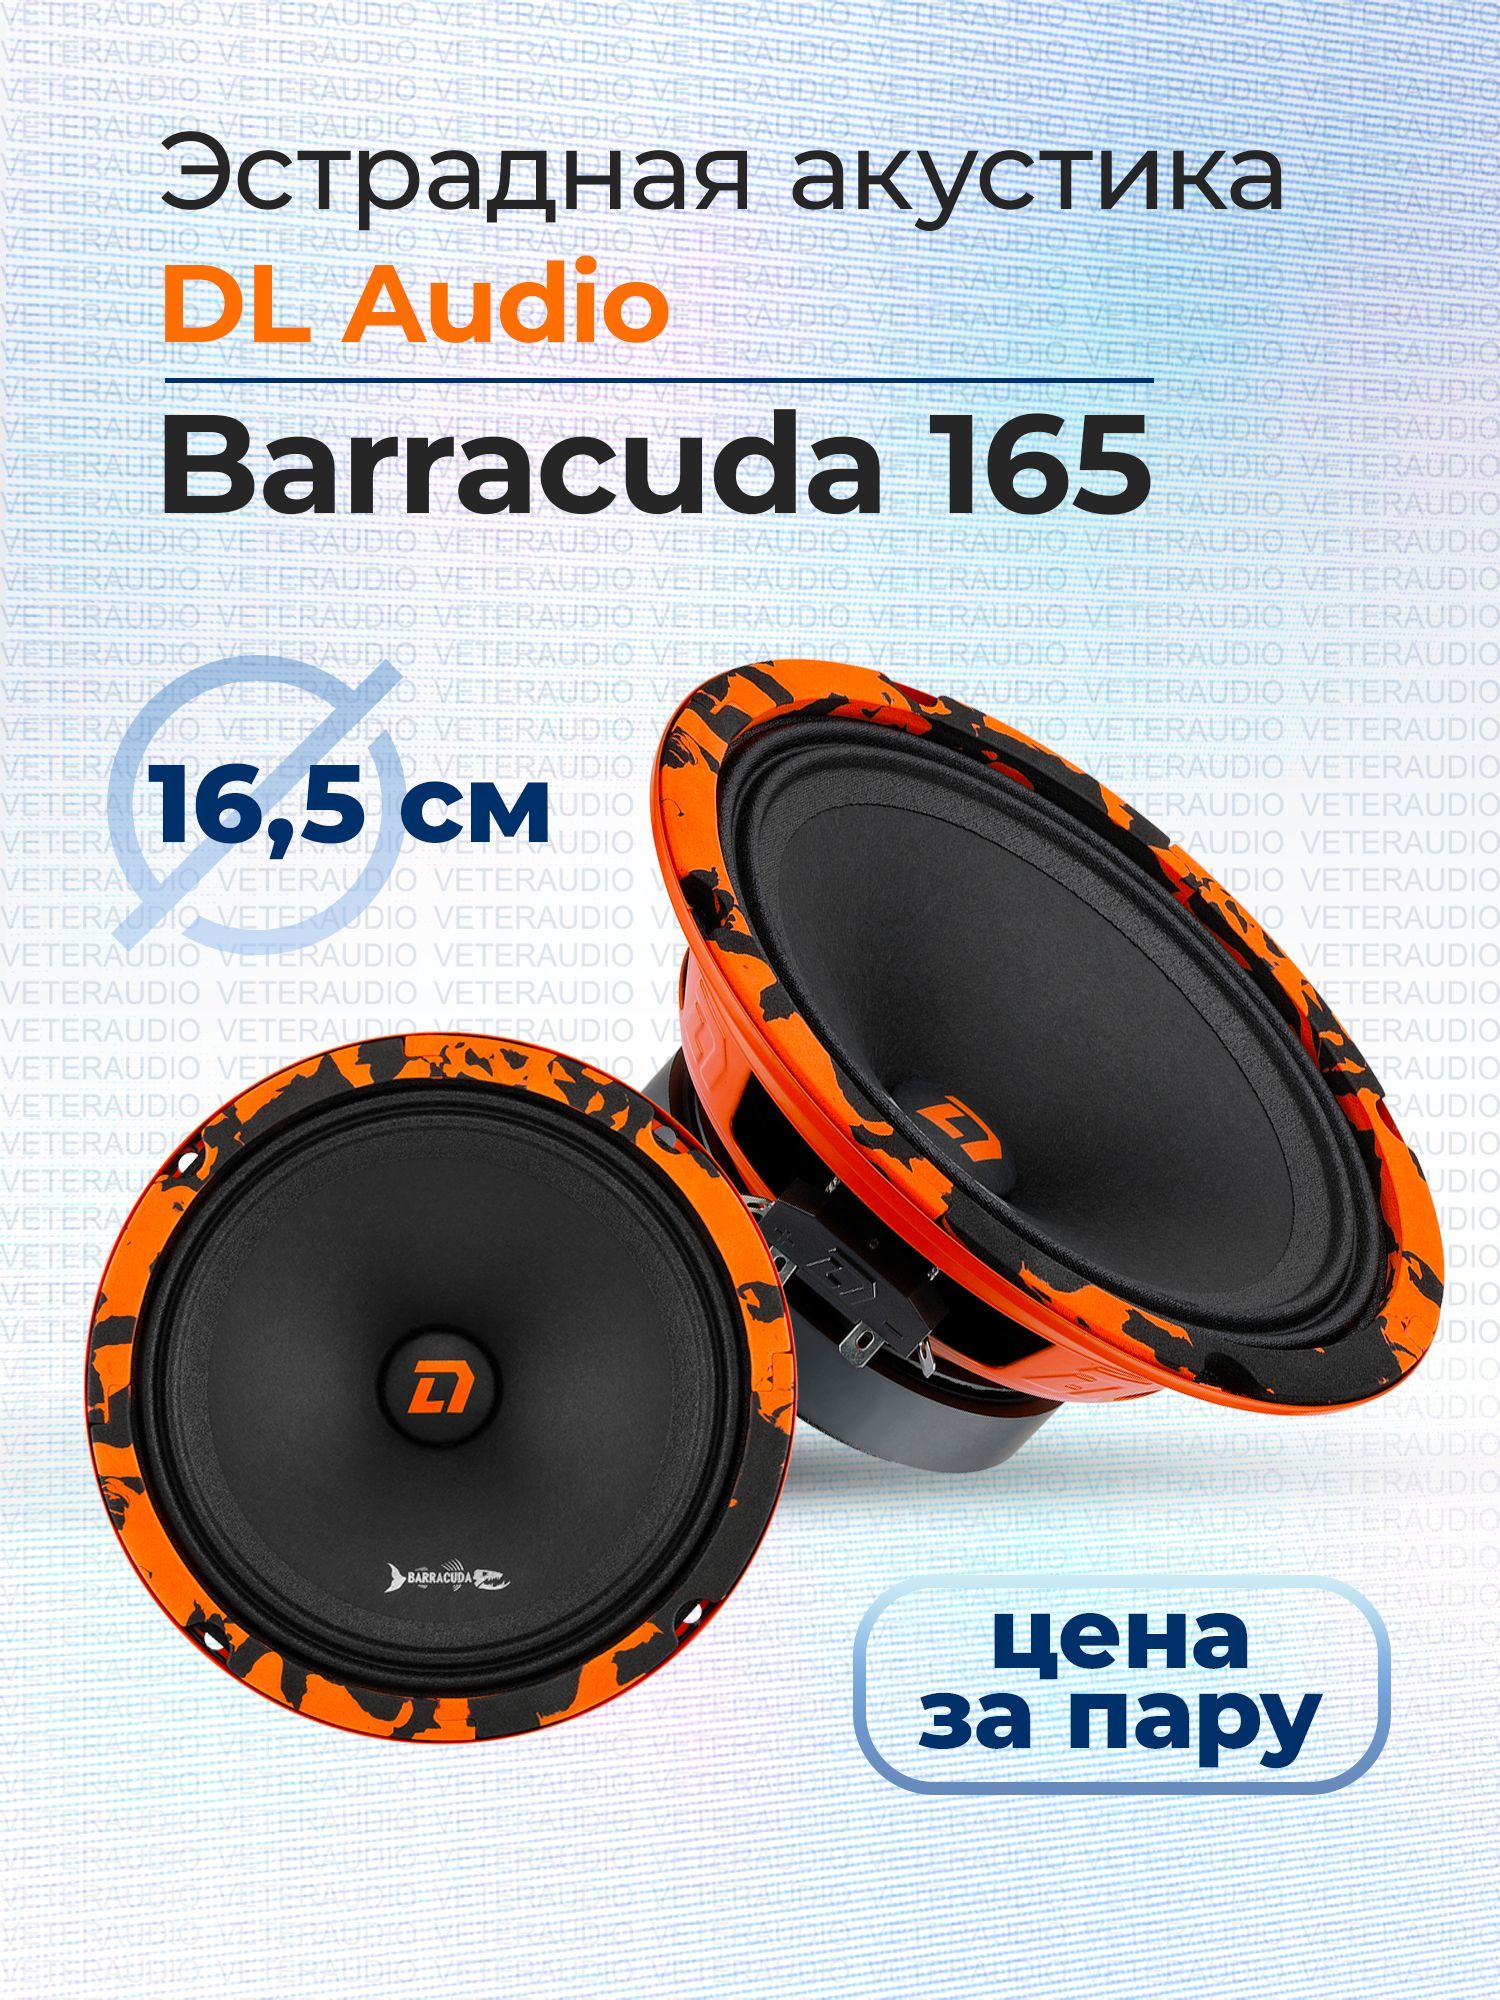 DLAudioКолонкидляавтомобиляBarracuda165,16см(6дюйм.)